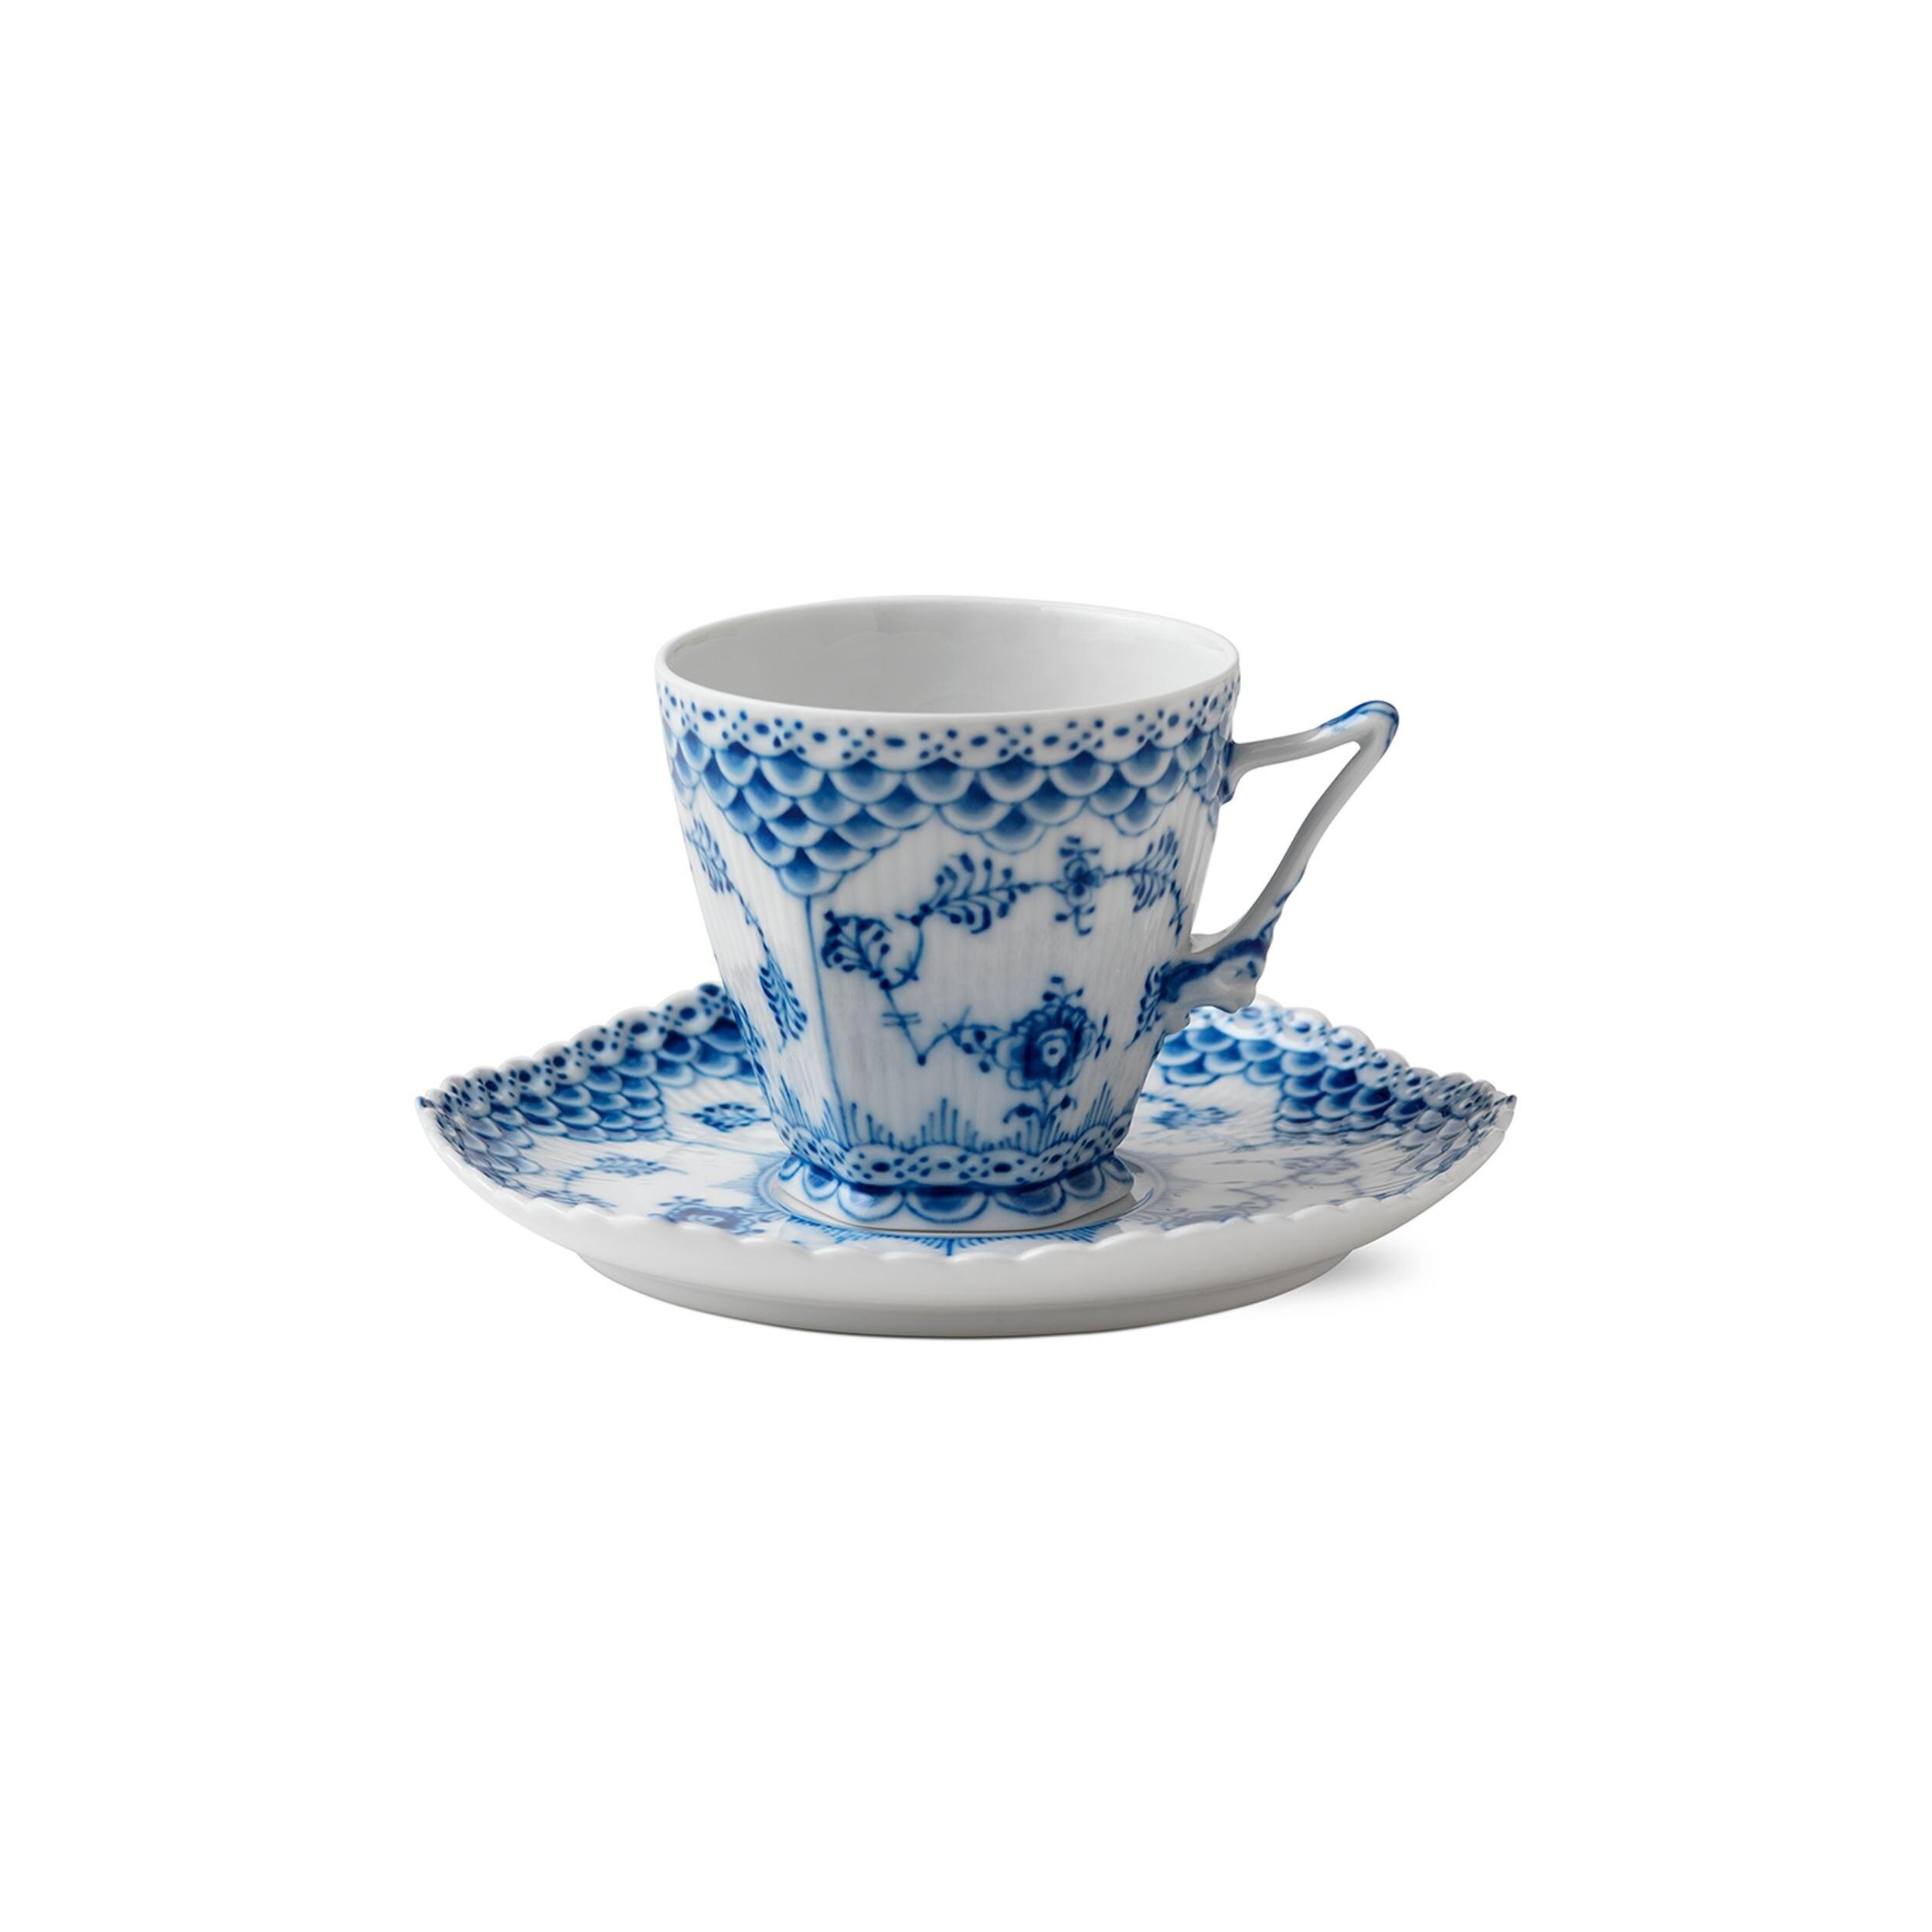 A 26-piece porcelain 'Blue Fluted' full lace tea service, Royal